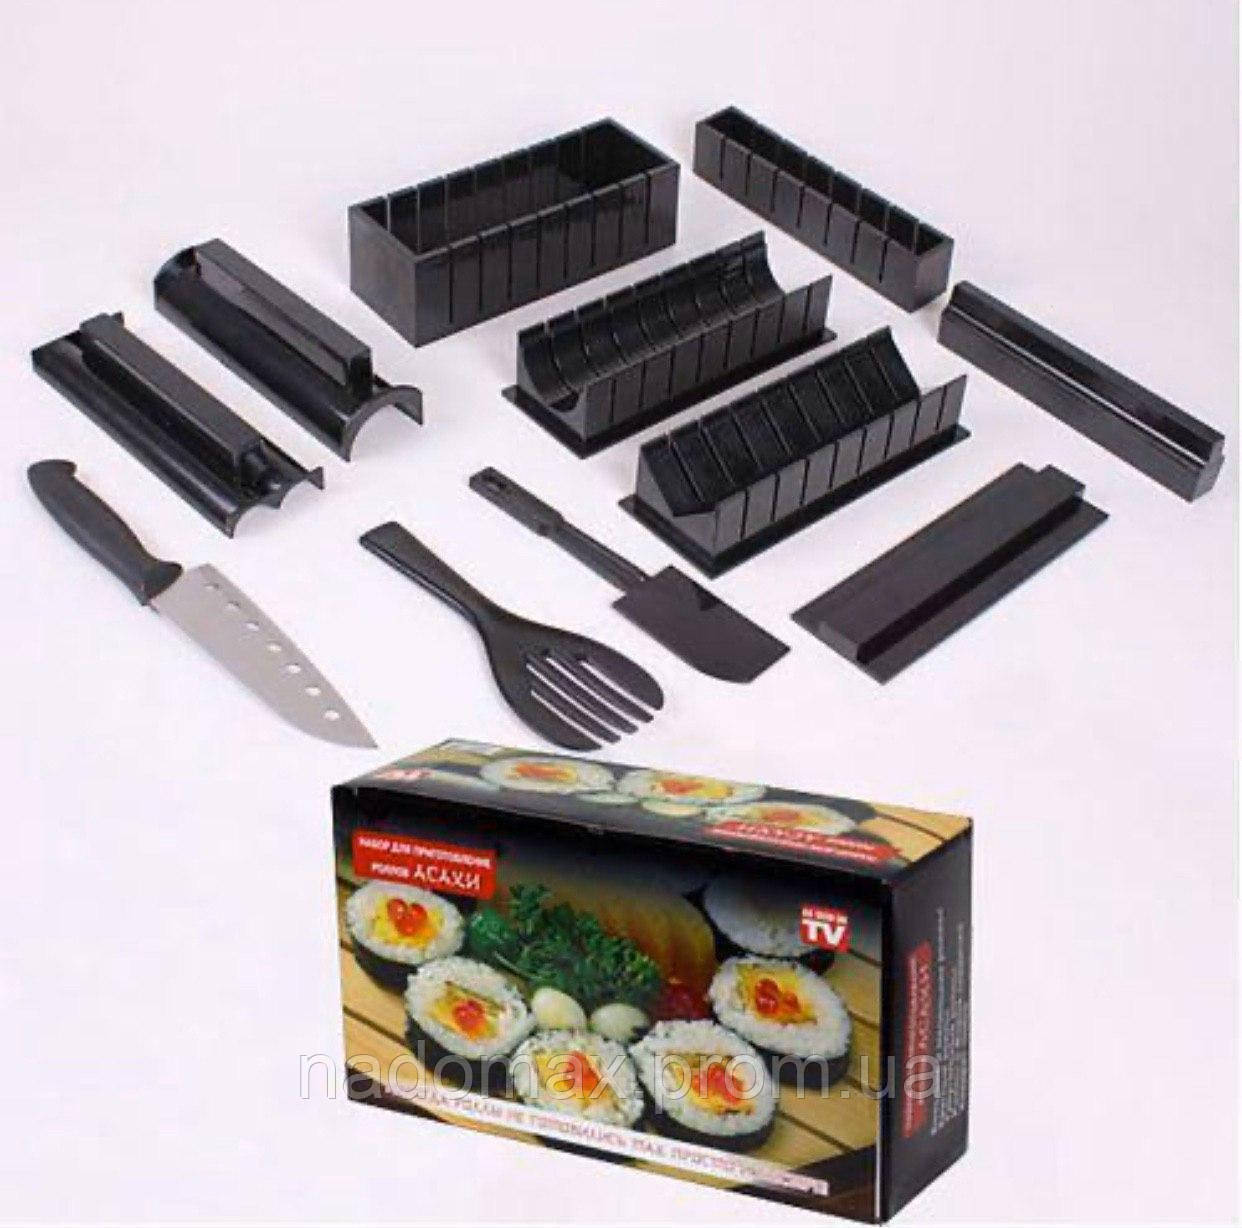 Дешевые набор для суши в минске фото 32